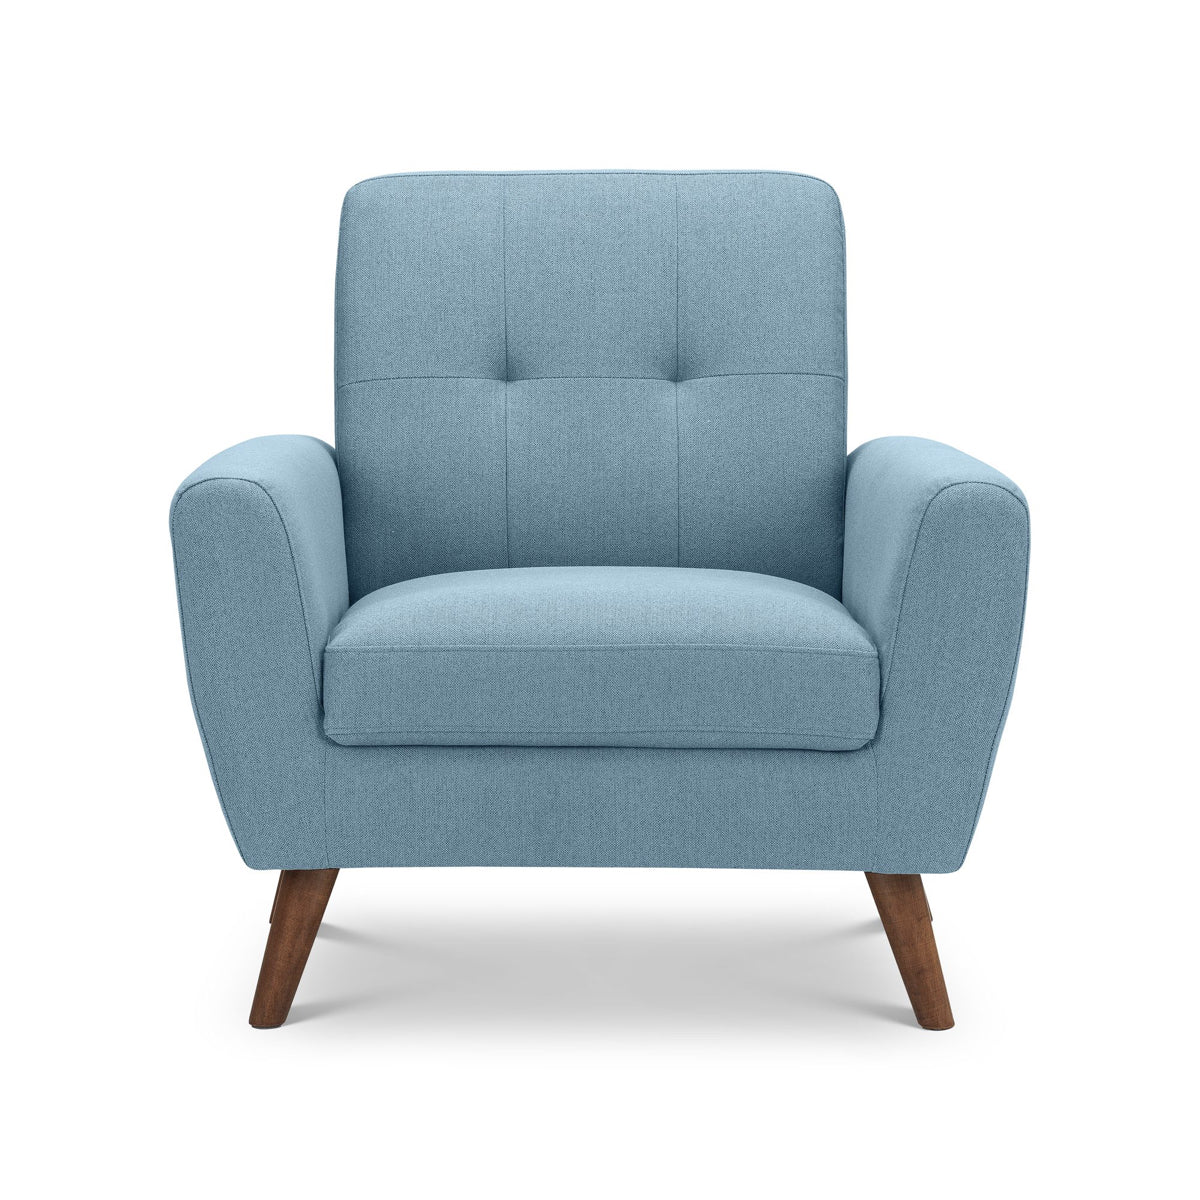 Julian Bowen, Monza Compact Retro Chair, Blue